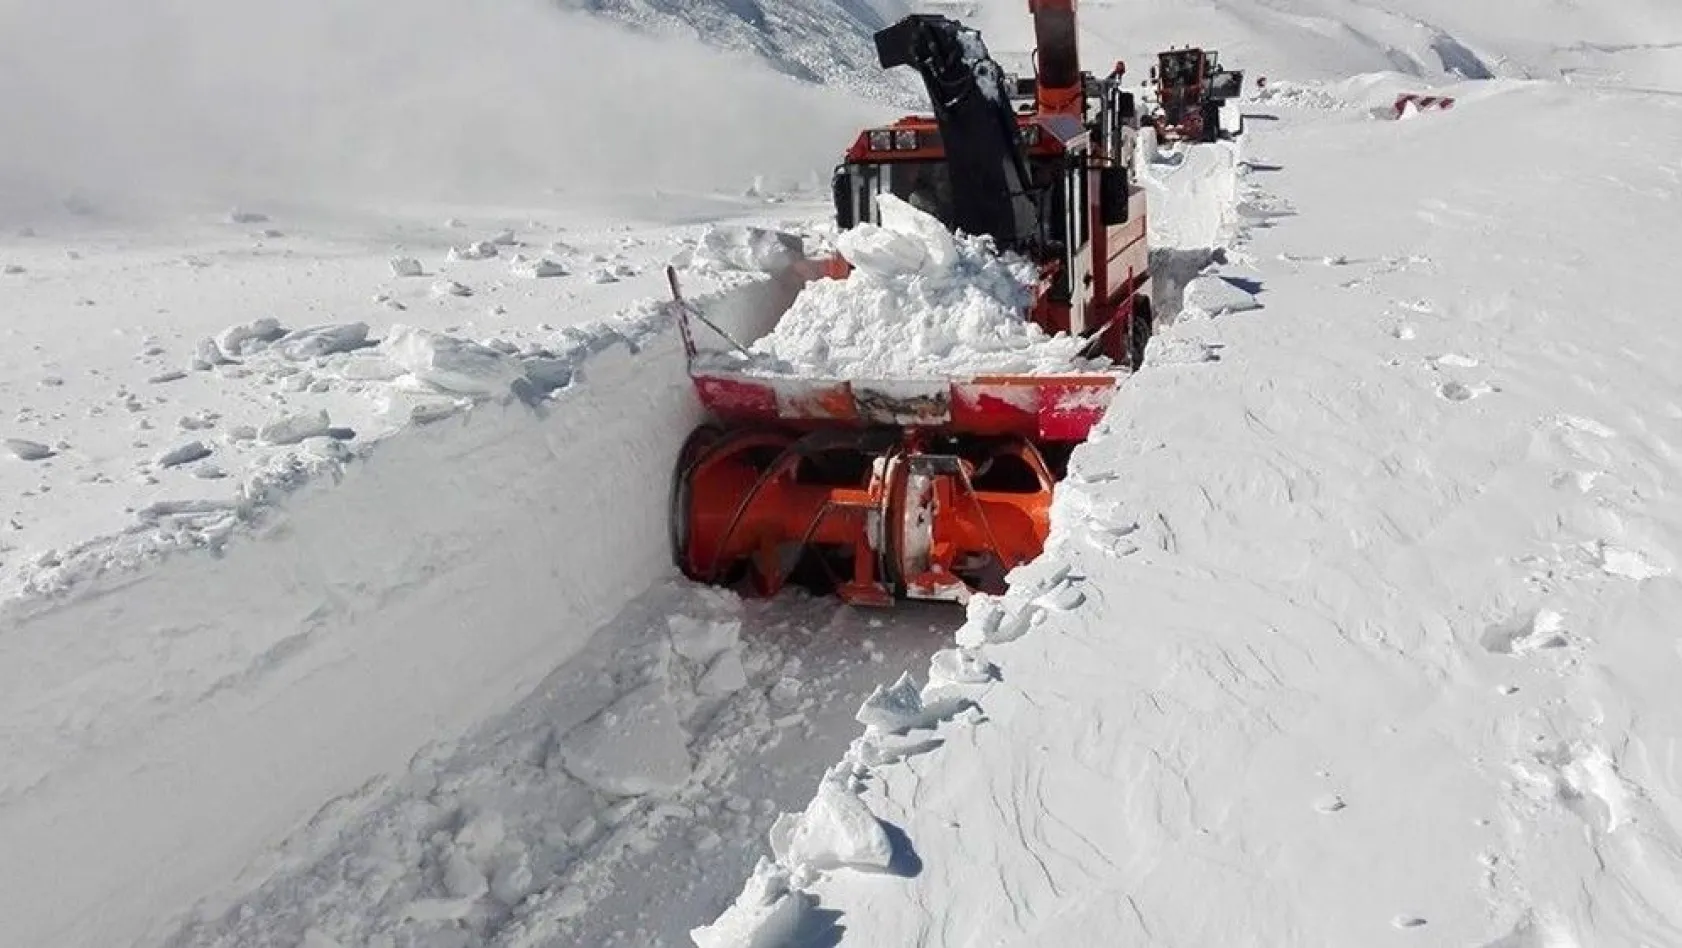 Erzurum'un yüksek kesimlerinde karla mücadele
